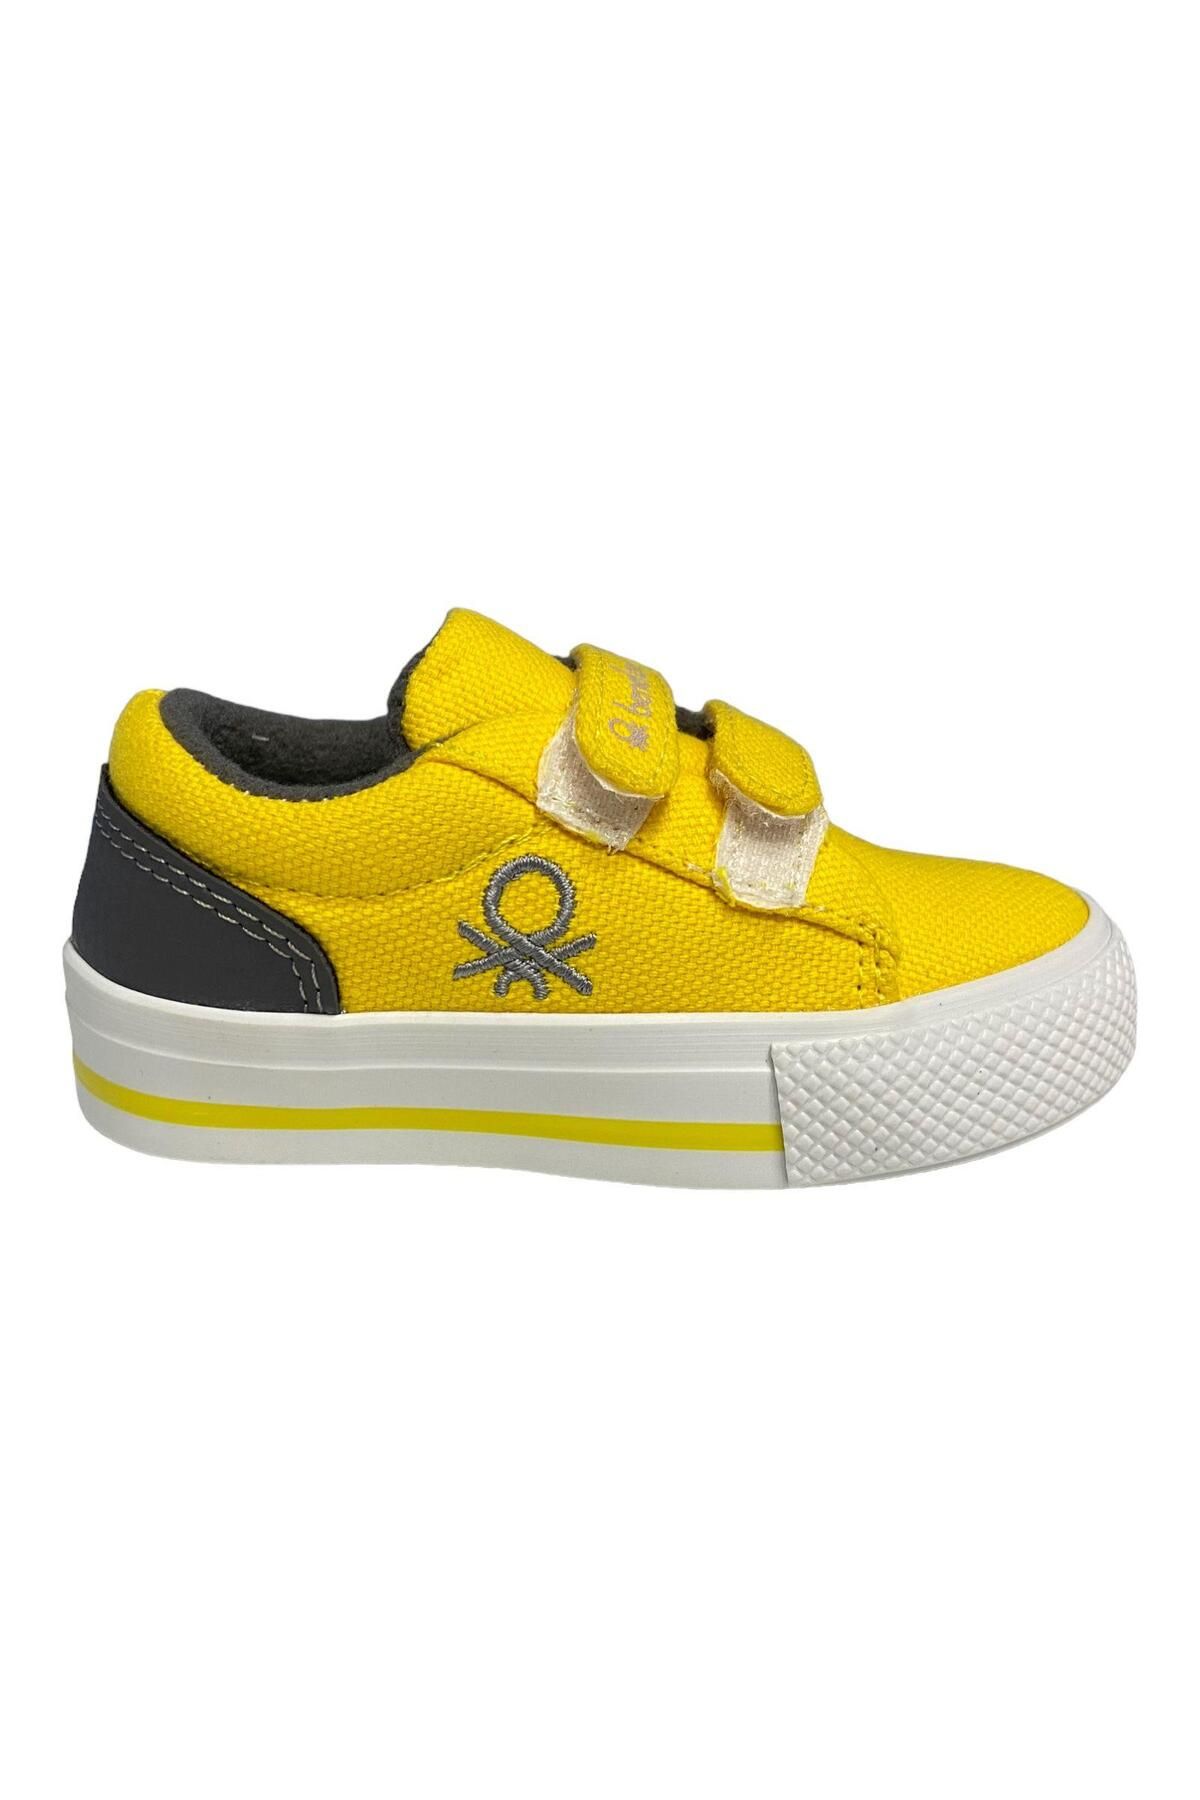 Benetton Bebe Sarı Çocuk Spor Ayakkabı